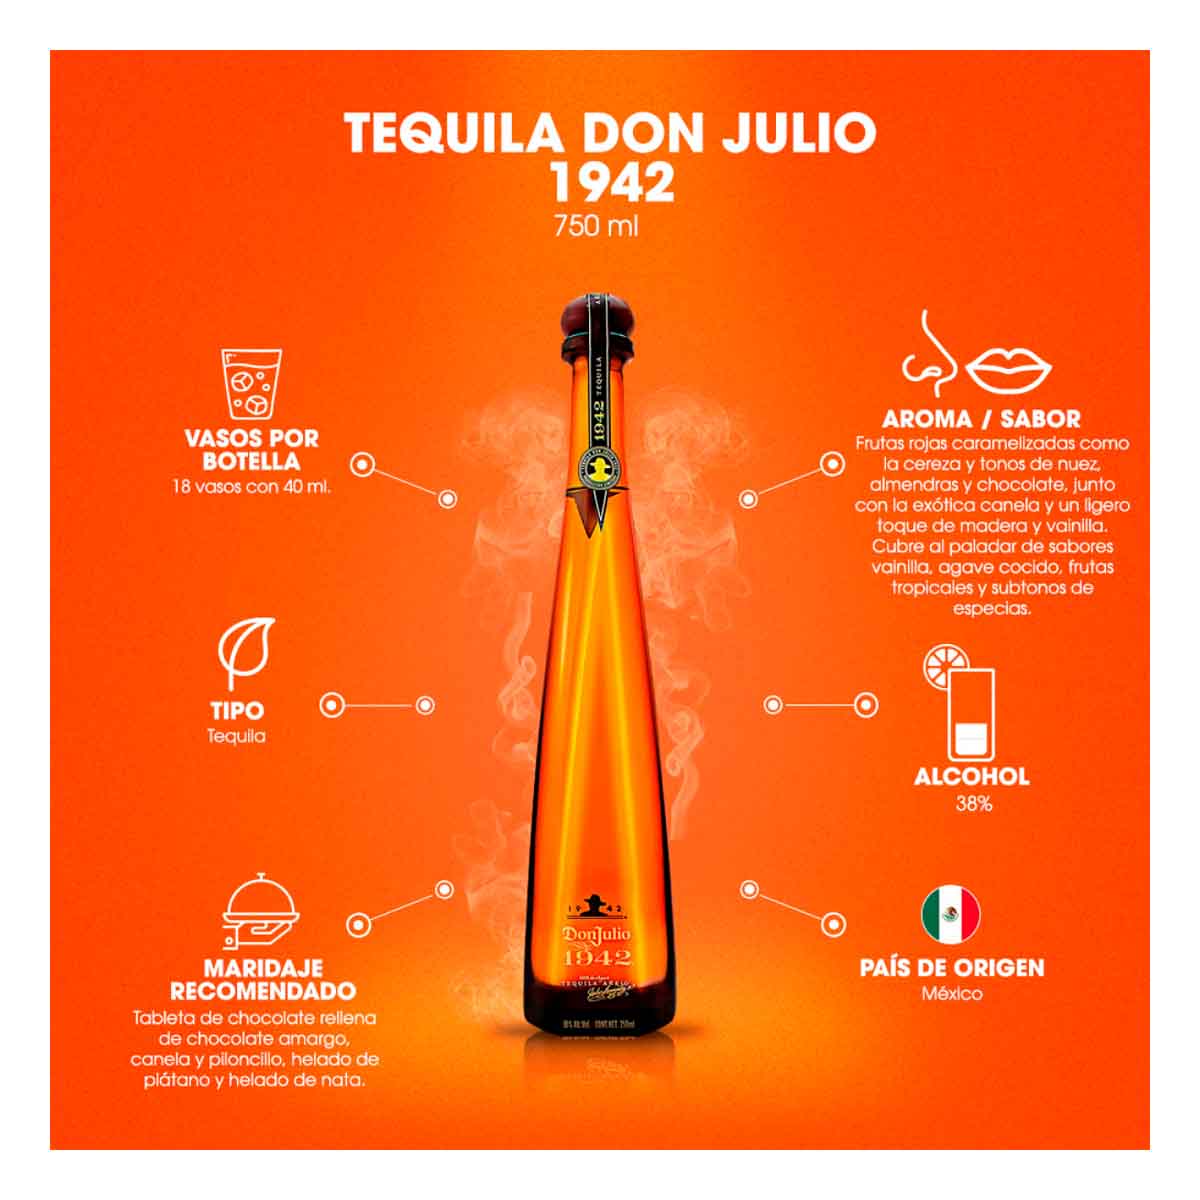 Tequila Don Julio 1942 Añejo 750 ml